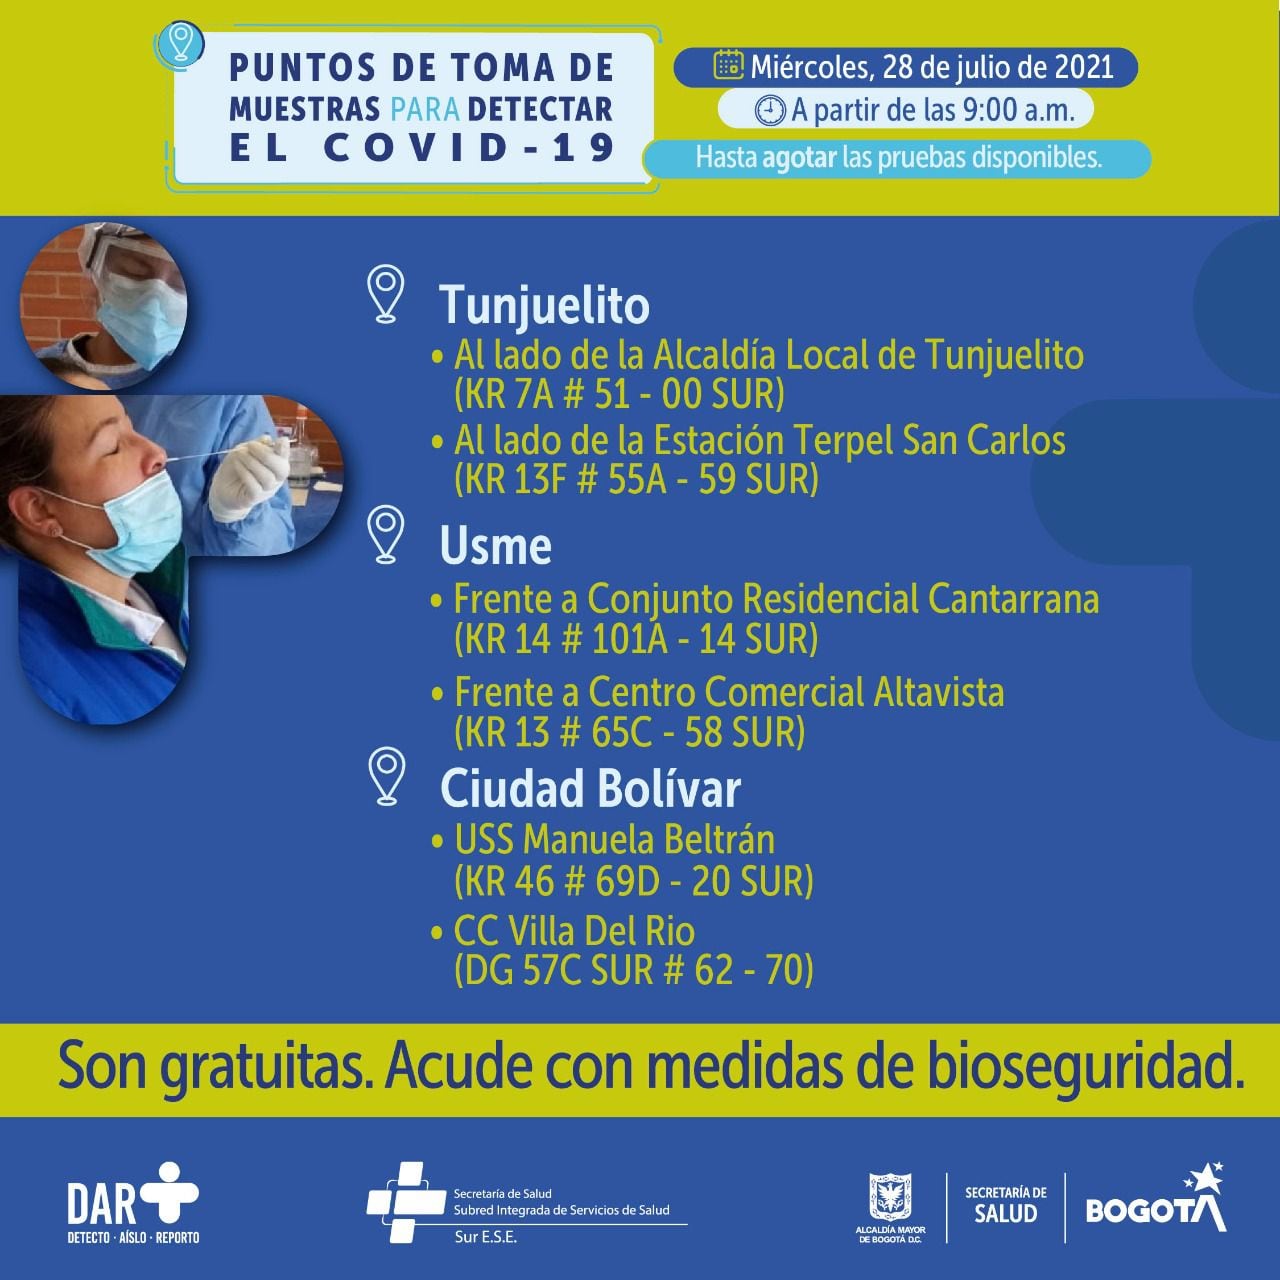 Pruebas gratis de covid 19 para hoy 28 de julio en Bogotá, estos son los puntos de atención